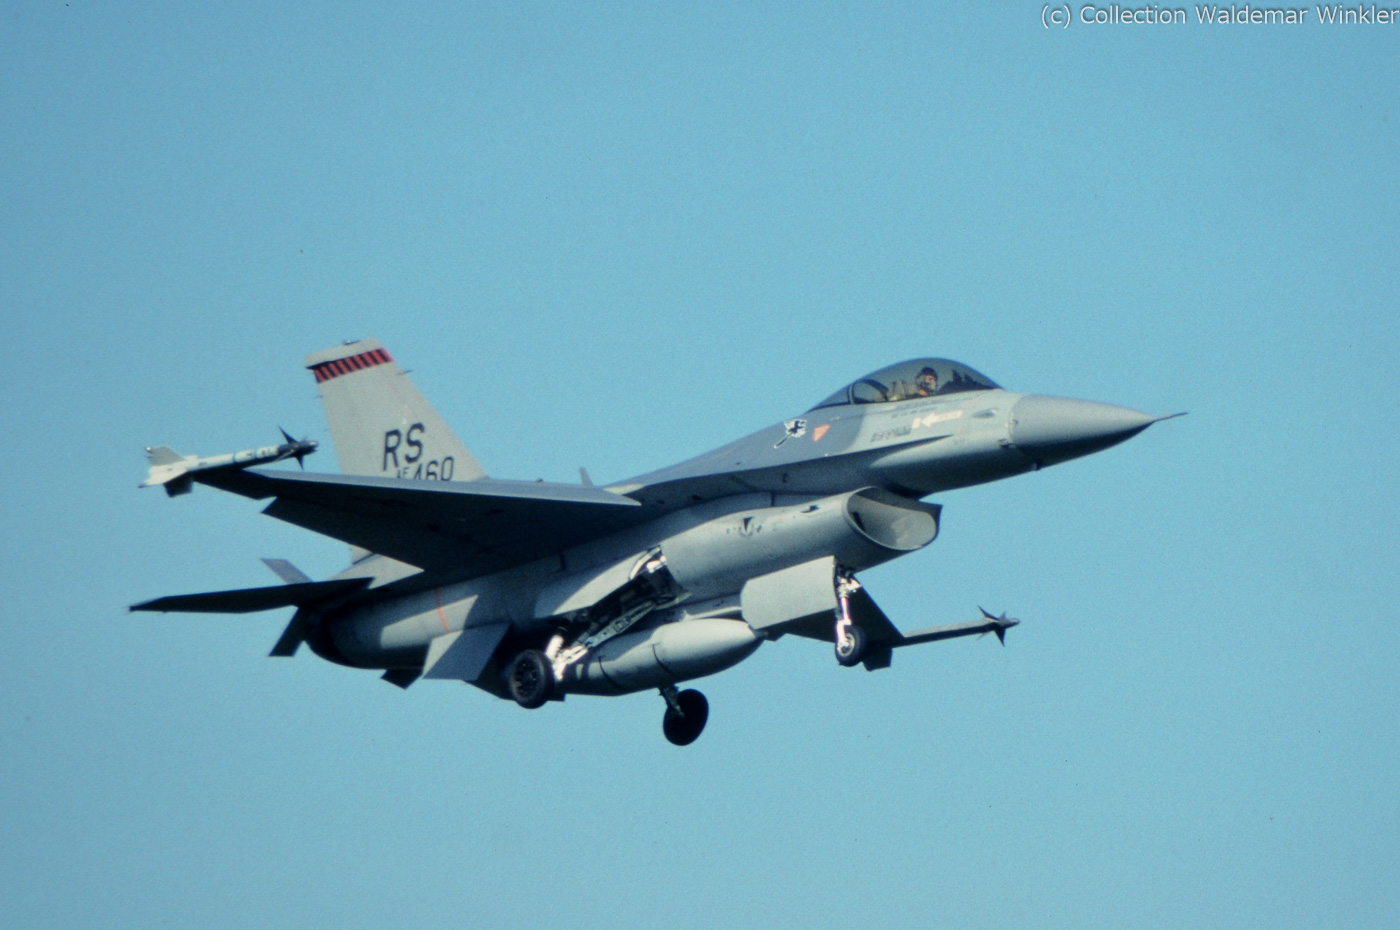 F-16A_Fighting_Falcon_DSC_2942.jpg